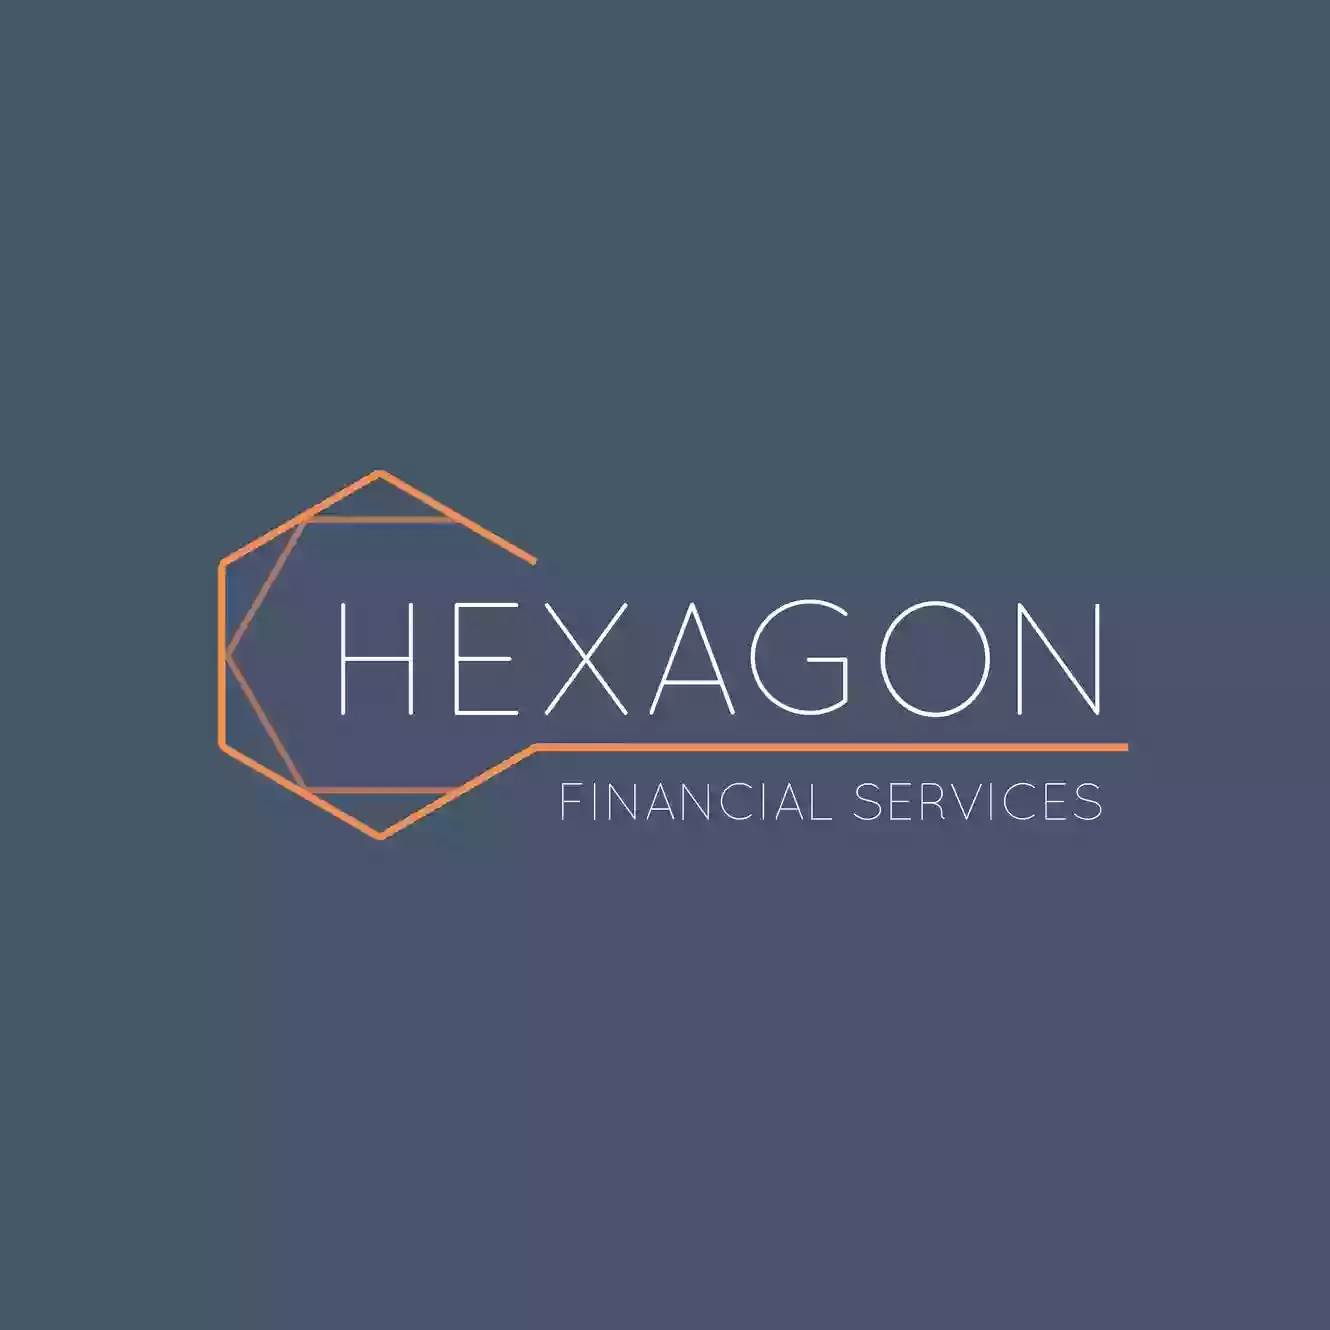 Hexagon Financial Services